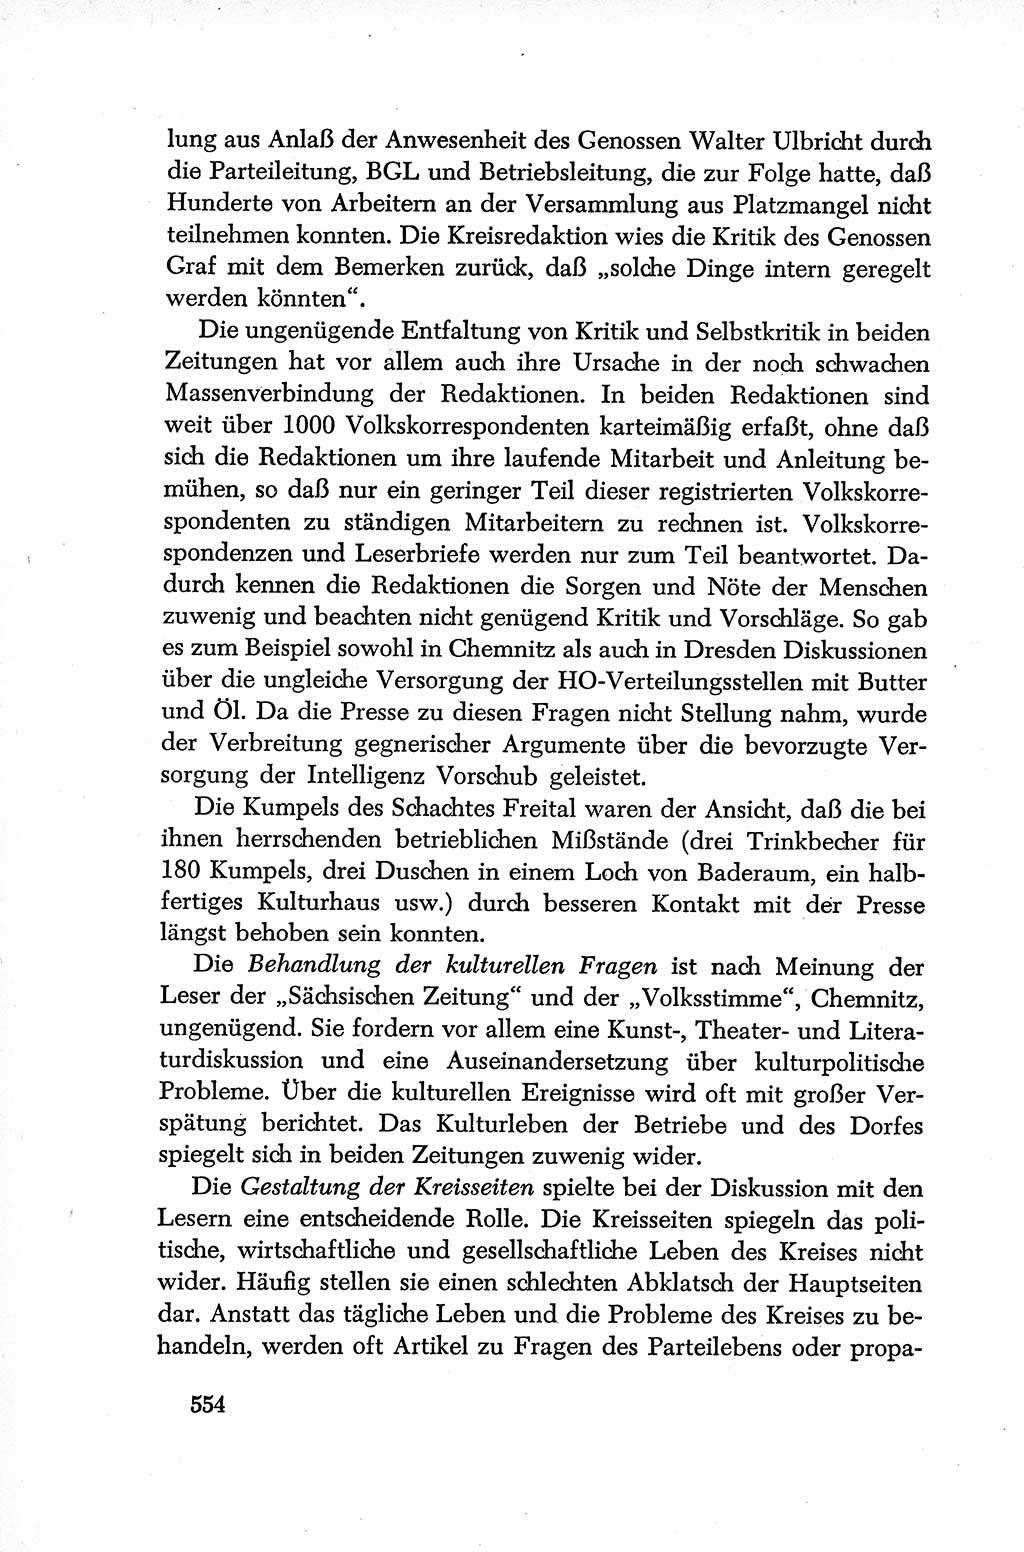 Dokumente der Sozialistischen Einheitspartei Deutschlands (SED) [Deutsche Demokratische Republik (DDR)] 1952-1953, Seite 554 (Dok. SED DDR 1952-1953, S. 554)